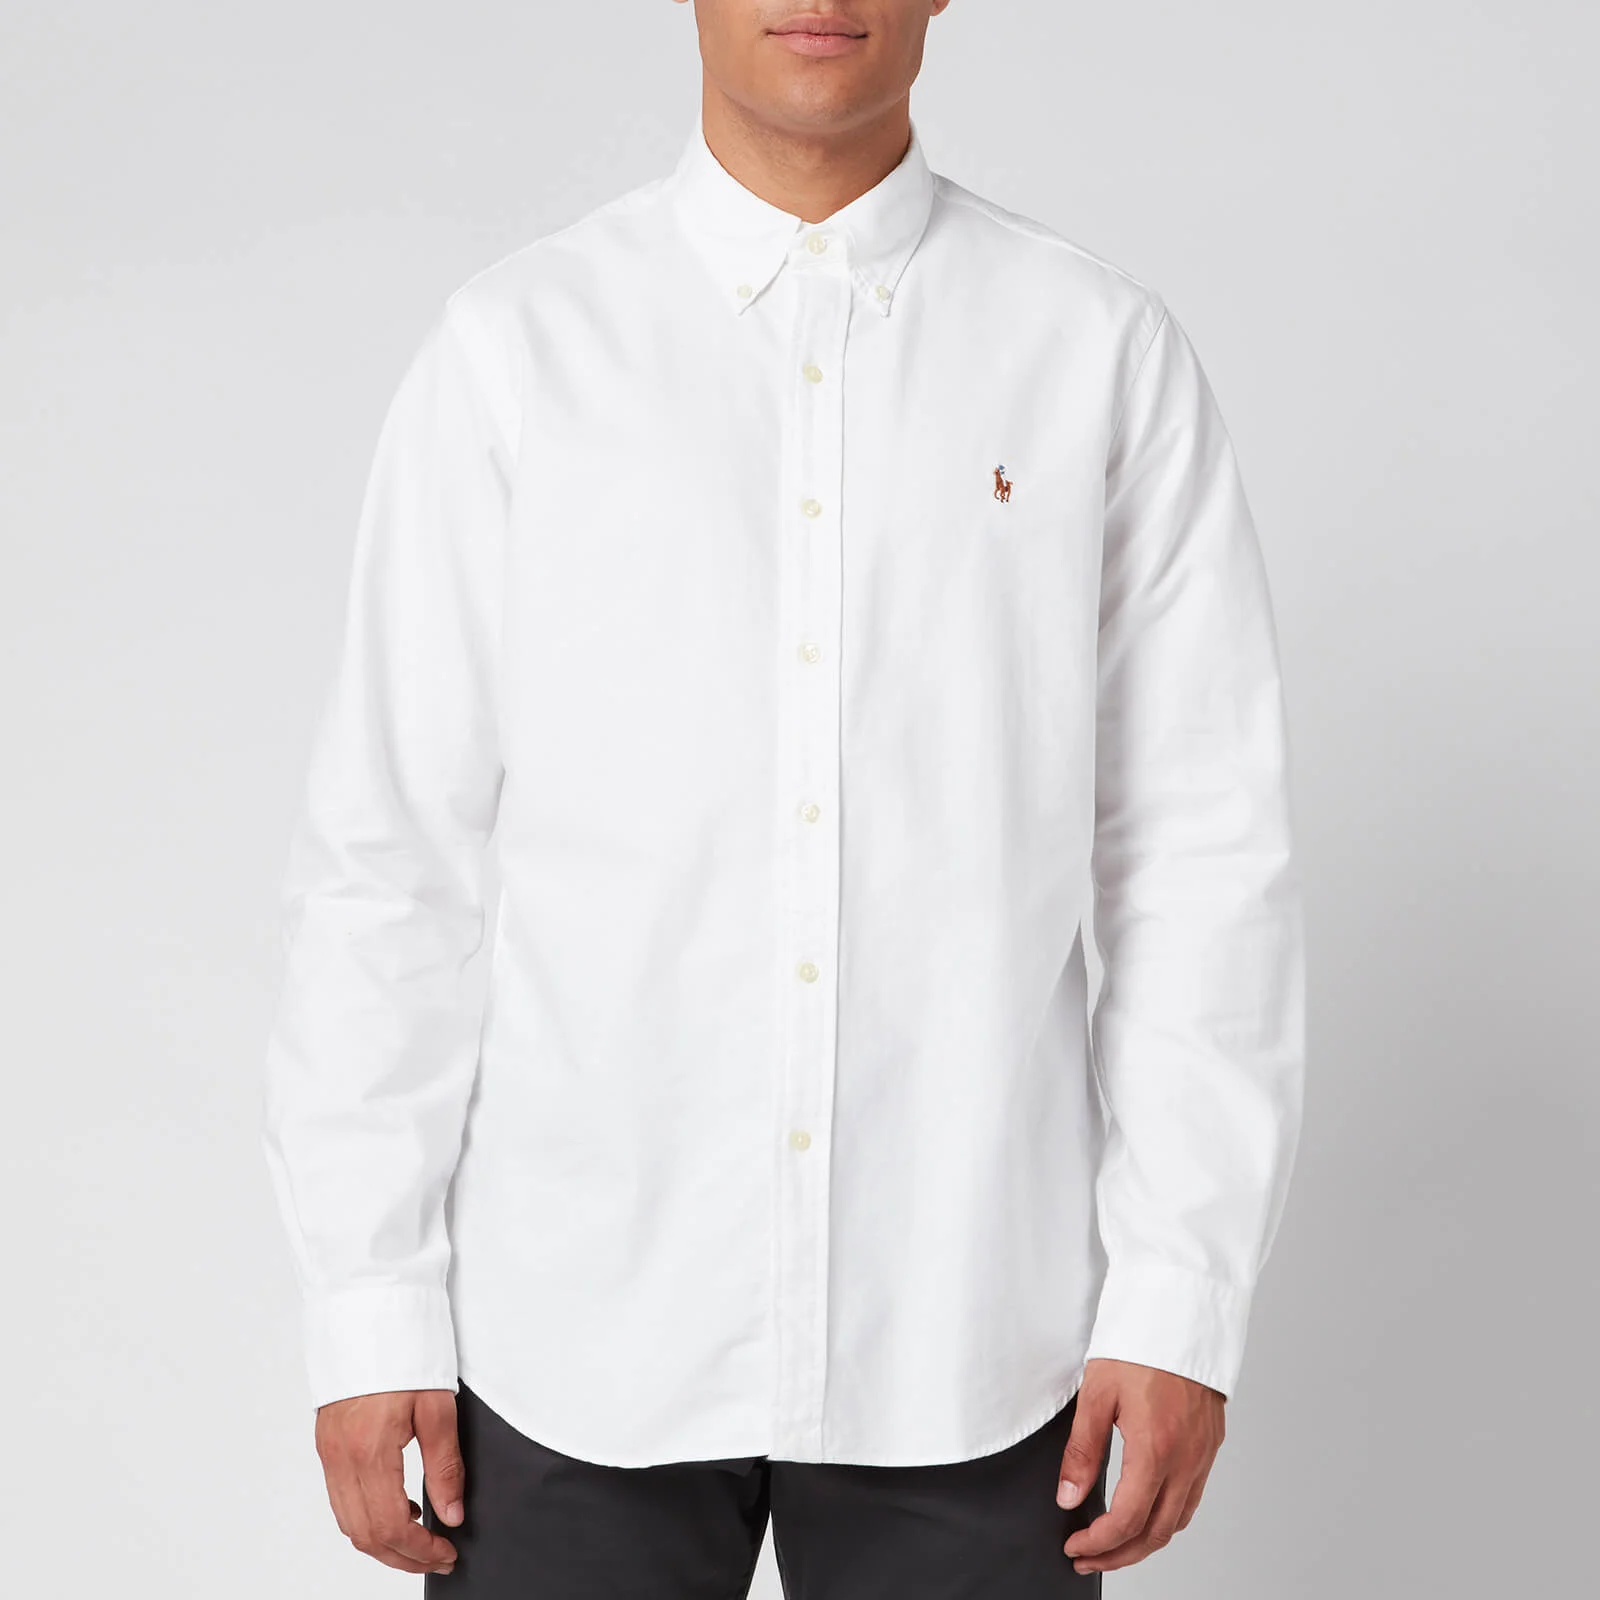 Polo Ralph Lauren Men's Long Sleeved Shirt - White Image 1